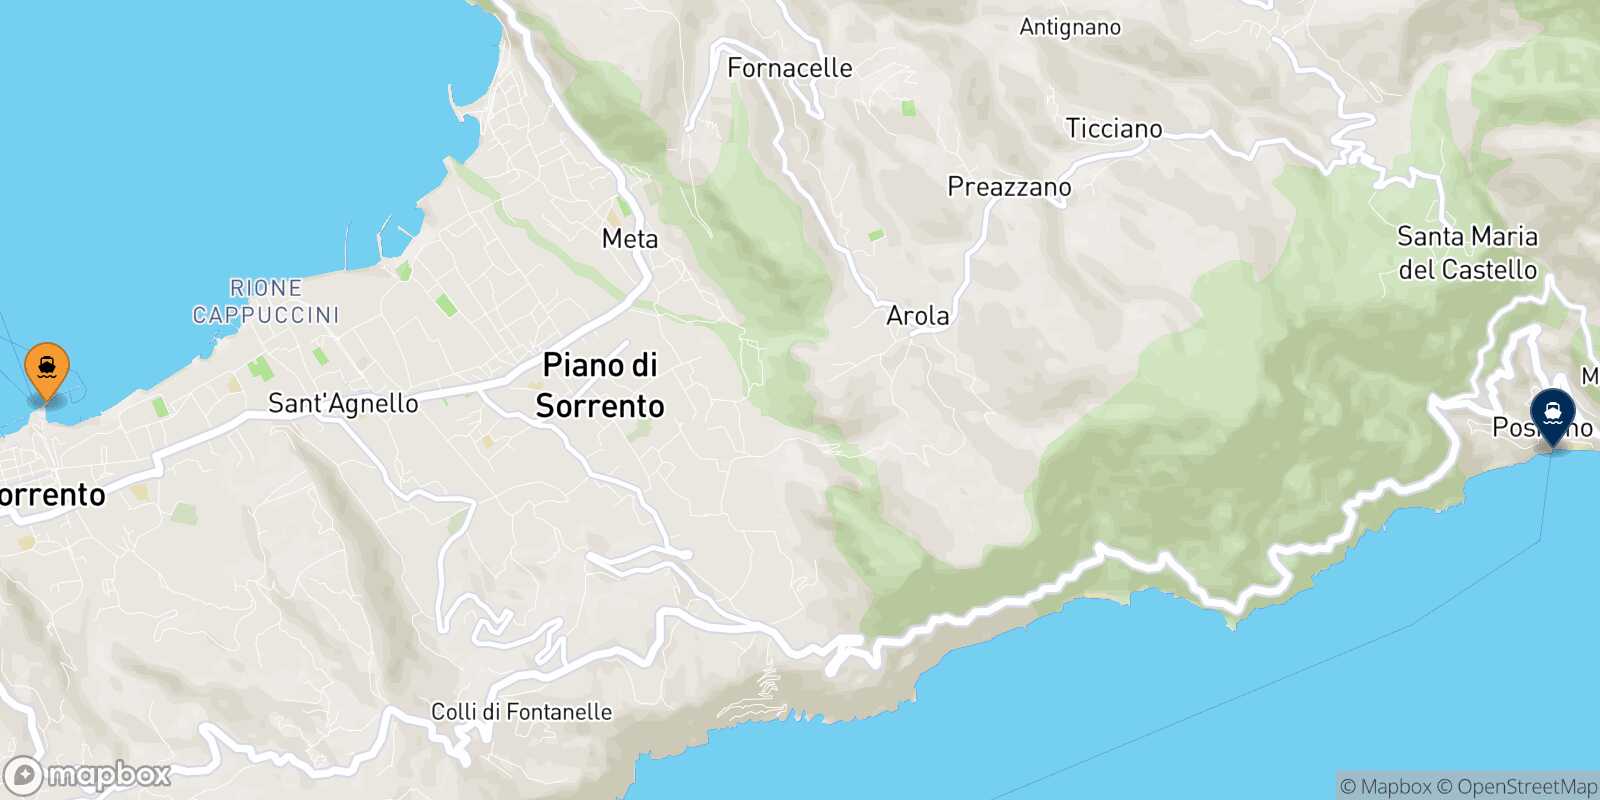 Mapa de la ruta Sorrento Positano